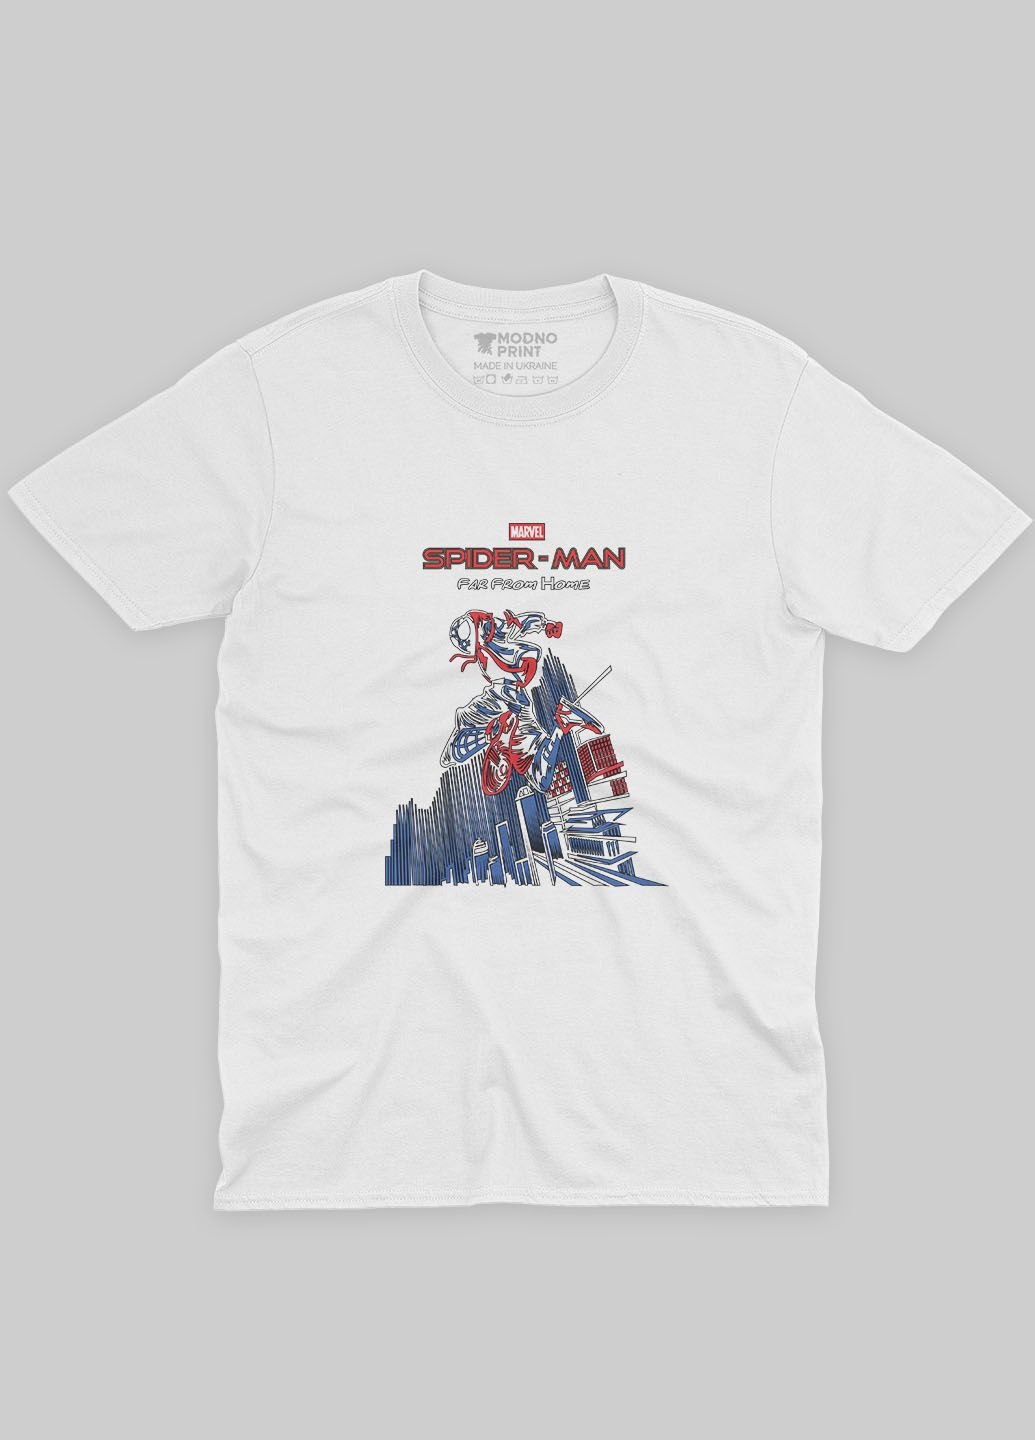 Біла демісезонна футболка для дівчинки з принтом супергероя - людина-павук (ts001-1-whi-006-014-041-g) Modno